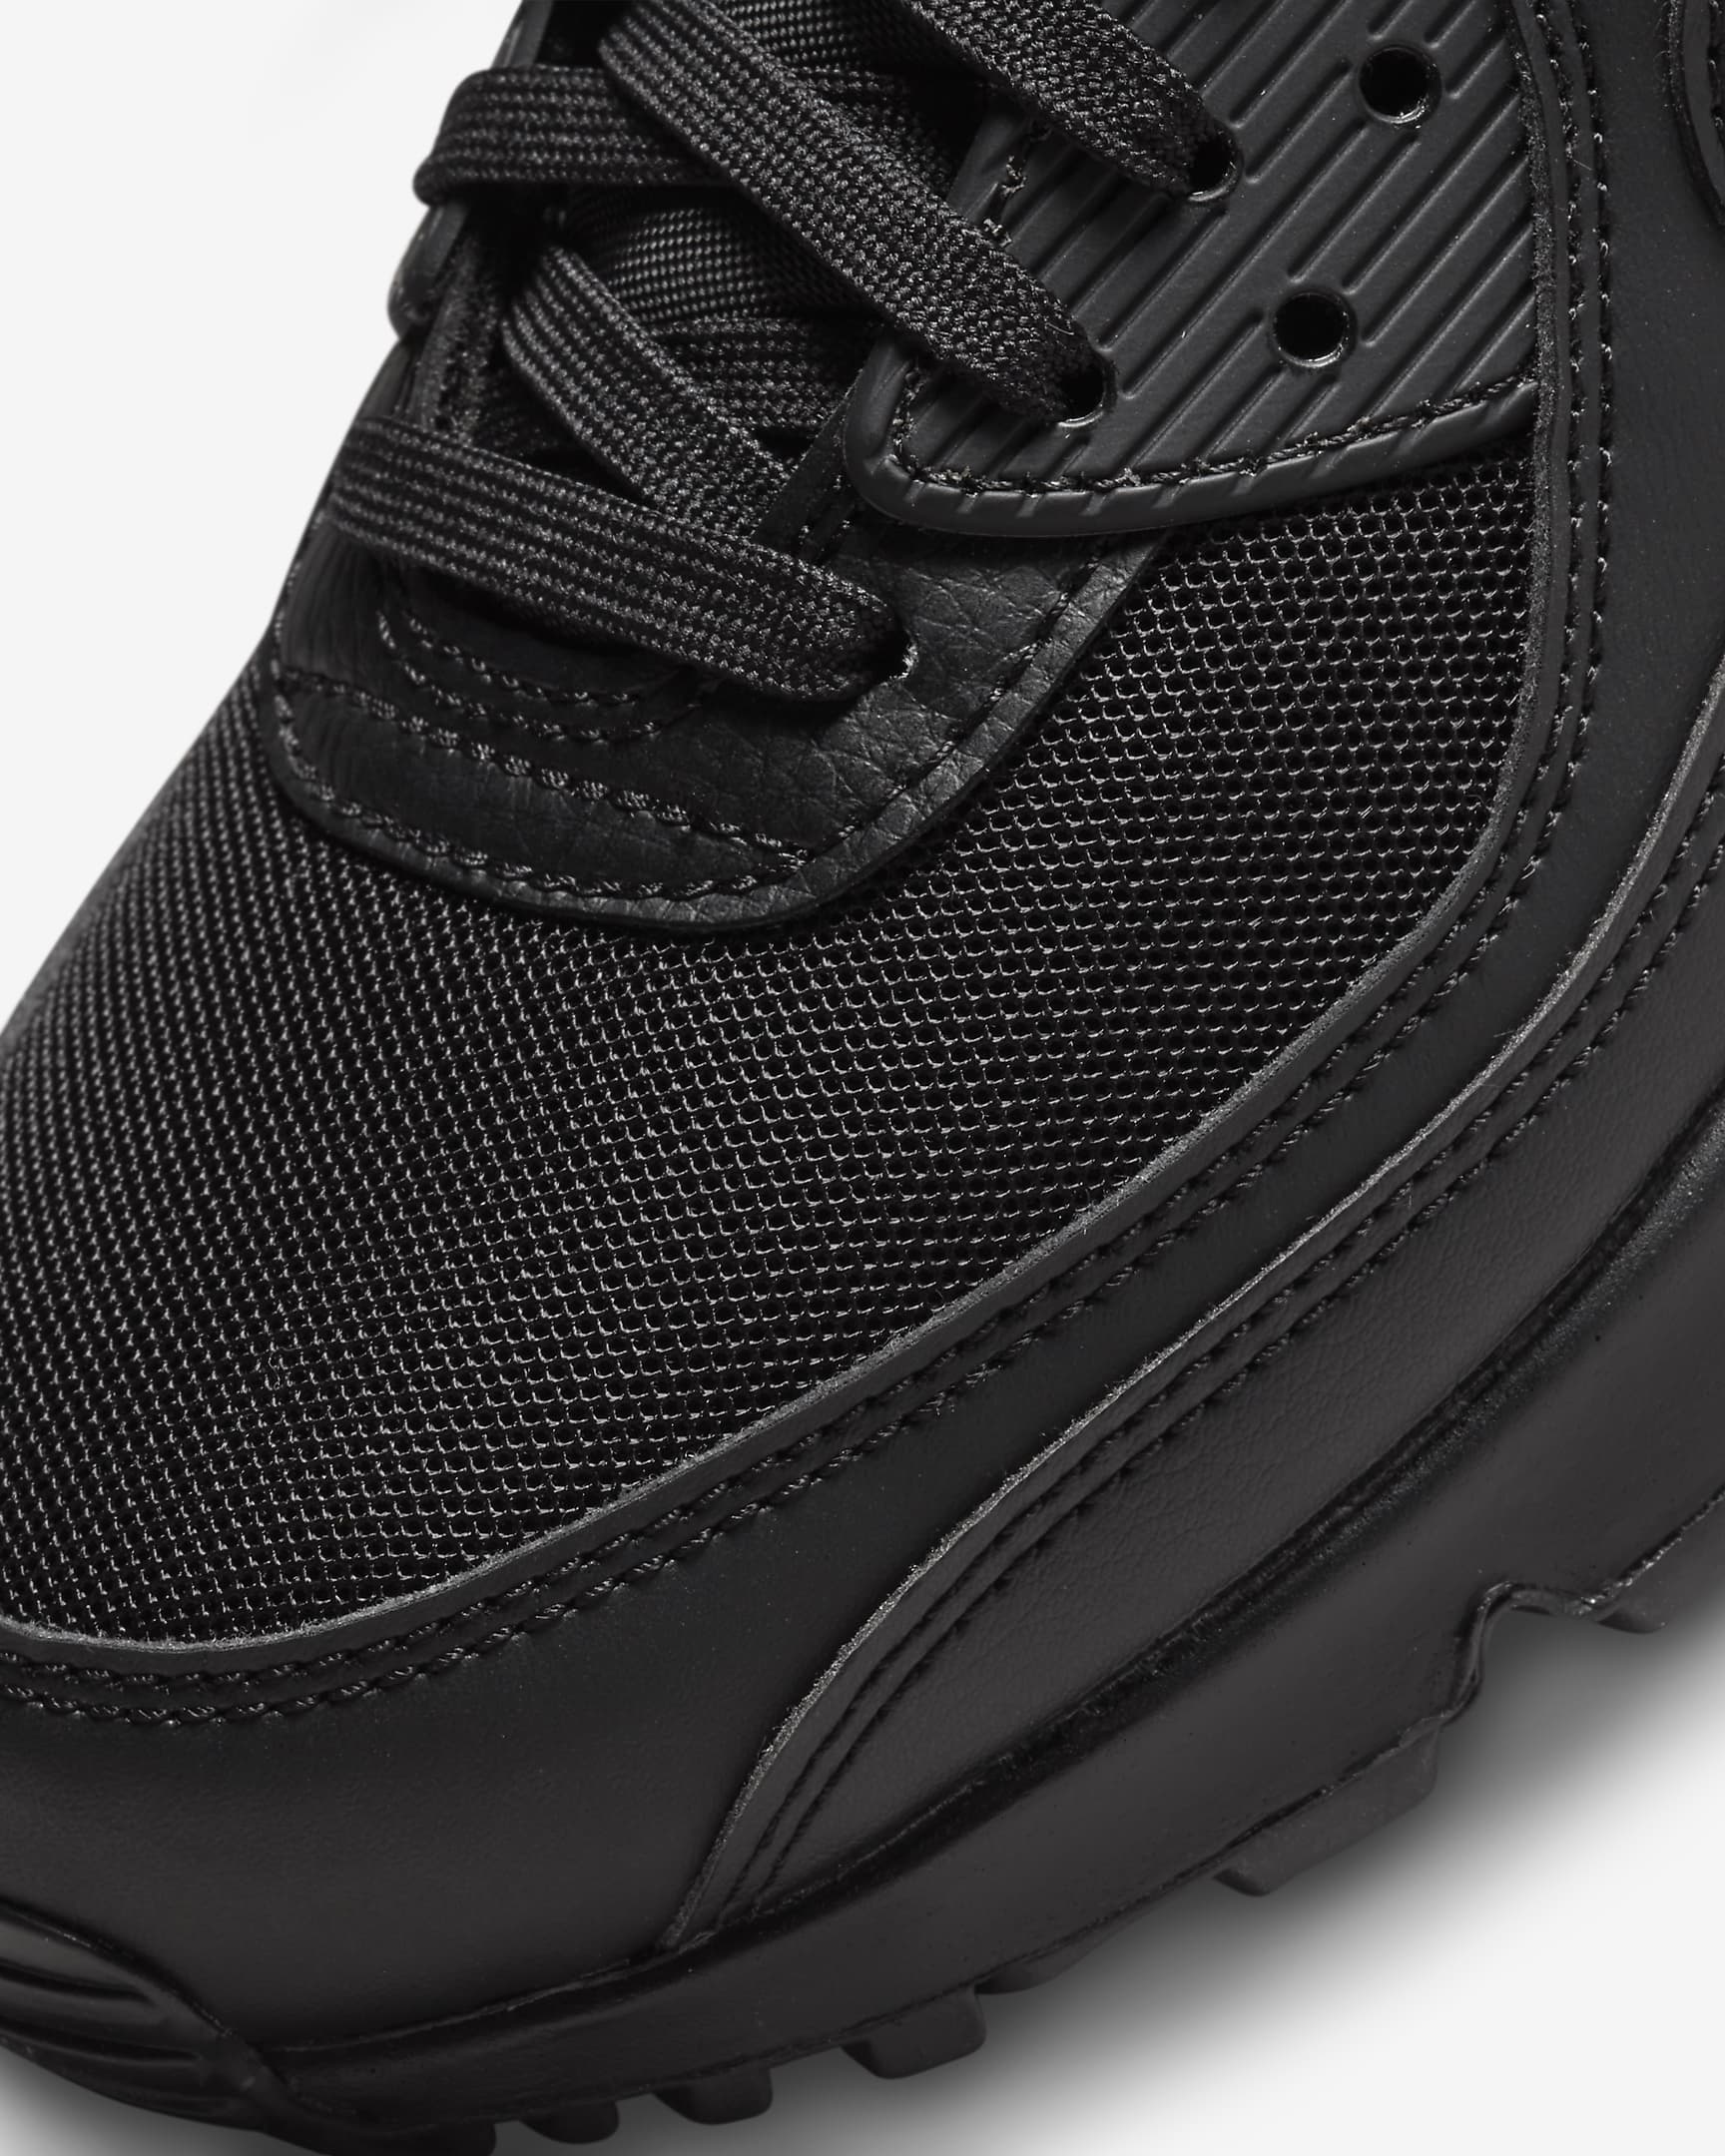 Nike Air Max 90-sko til kvinder - sort/sort/sort/sort